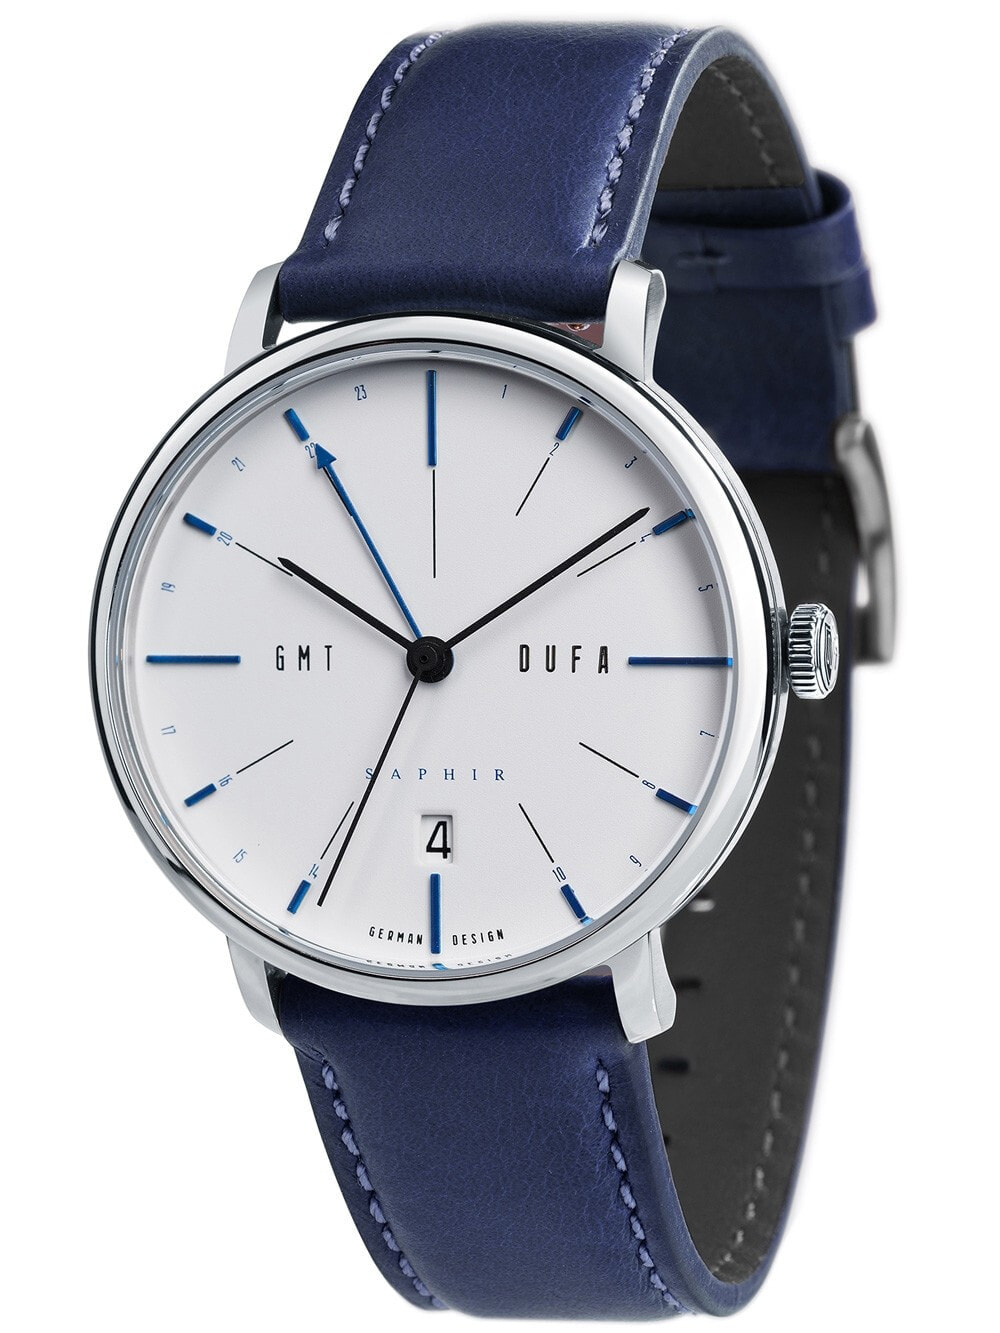 Мужские наручные часы с синим кожаным ремешком  DuFa DF-9030-01 Sapphire Mens 40mm 3ATM